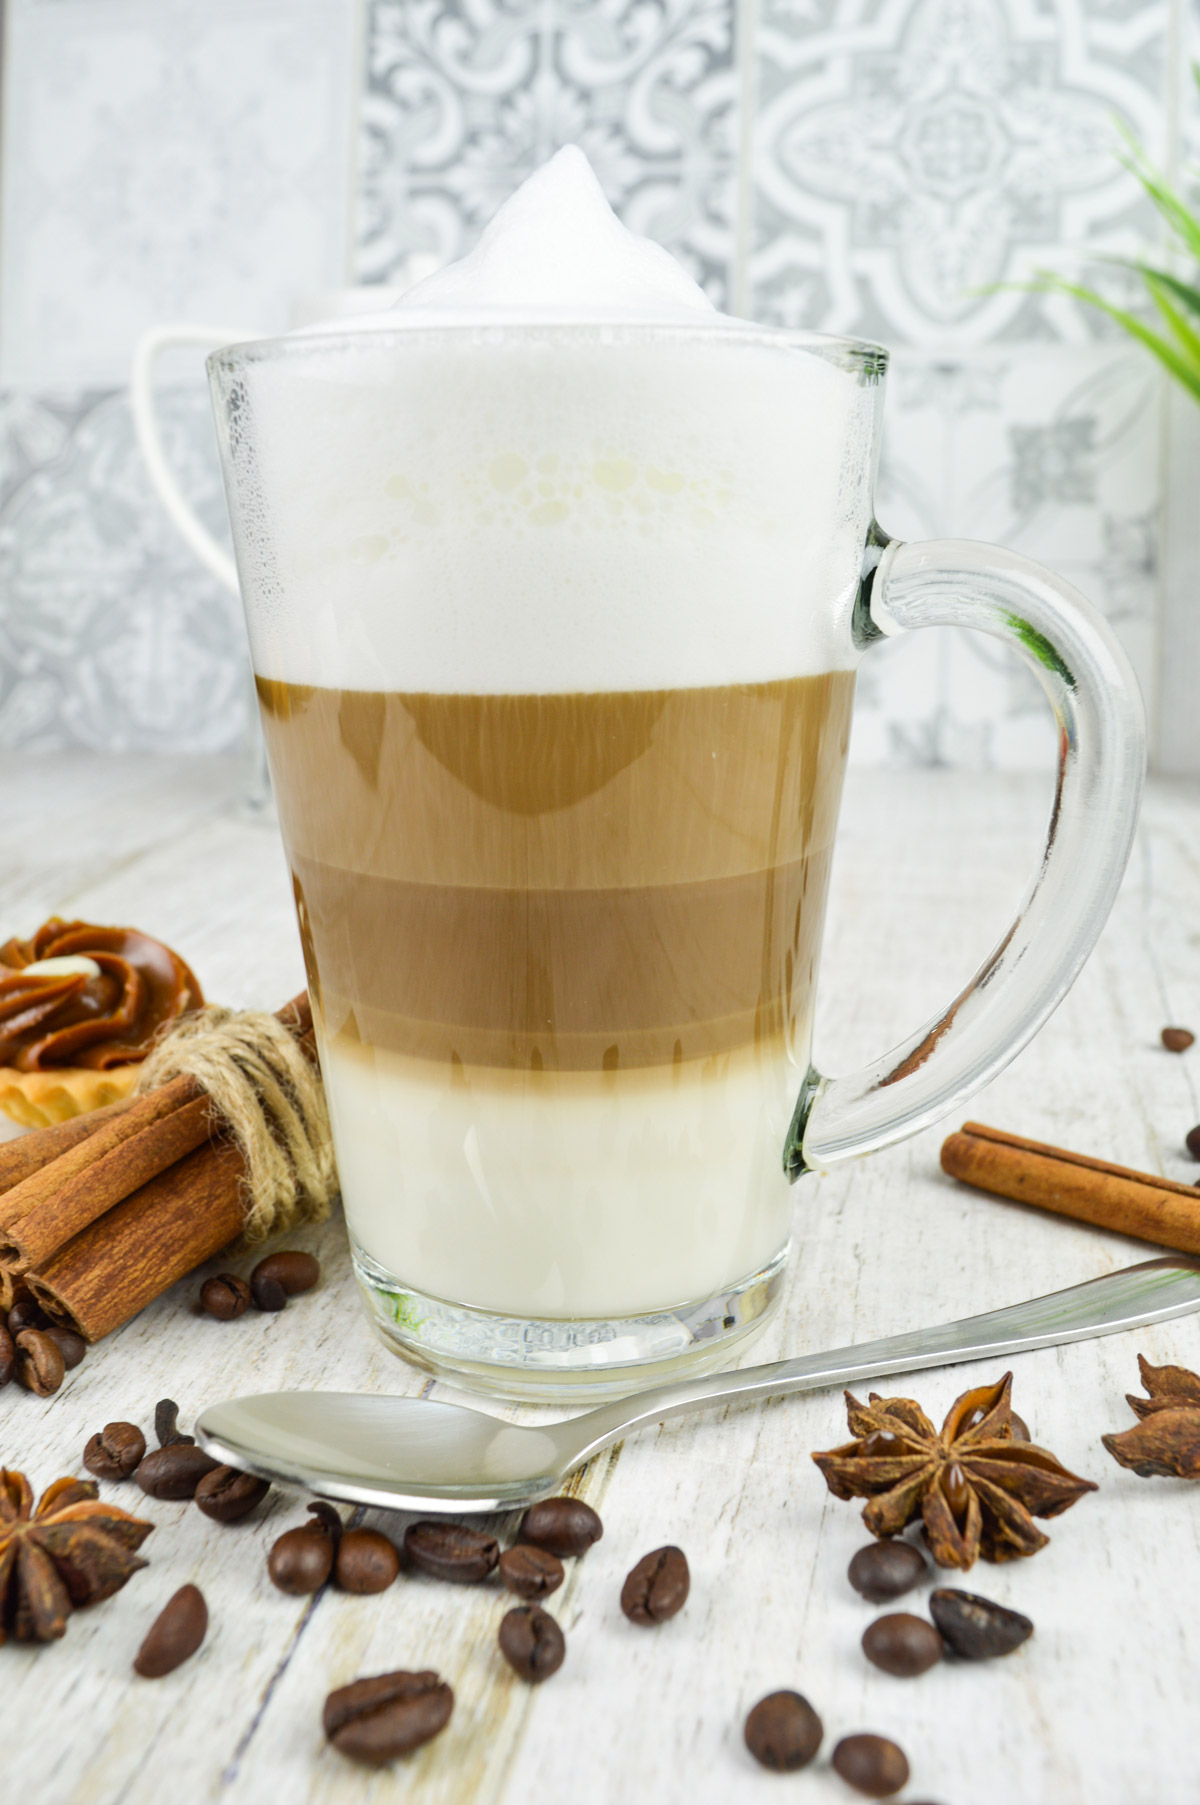 6 Latte Macchiato Gläser 300 ml mit Henkel und 6 Edelstahl-Löffel GRATIS Kaffee